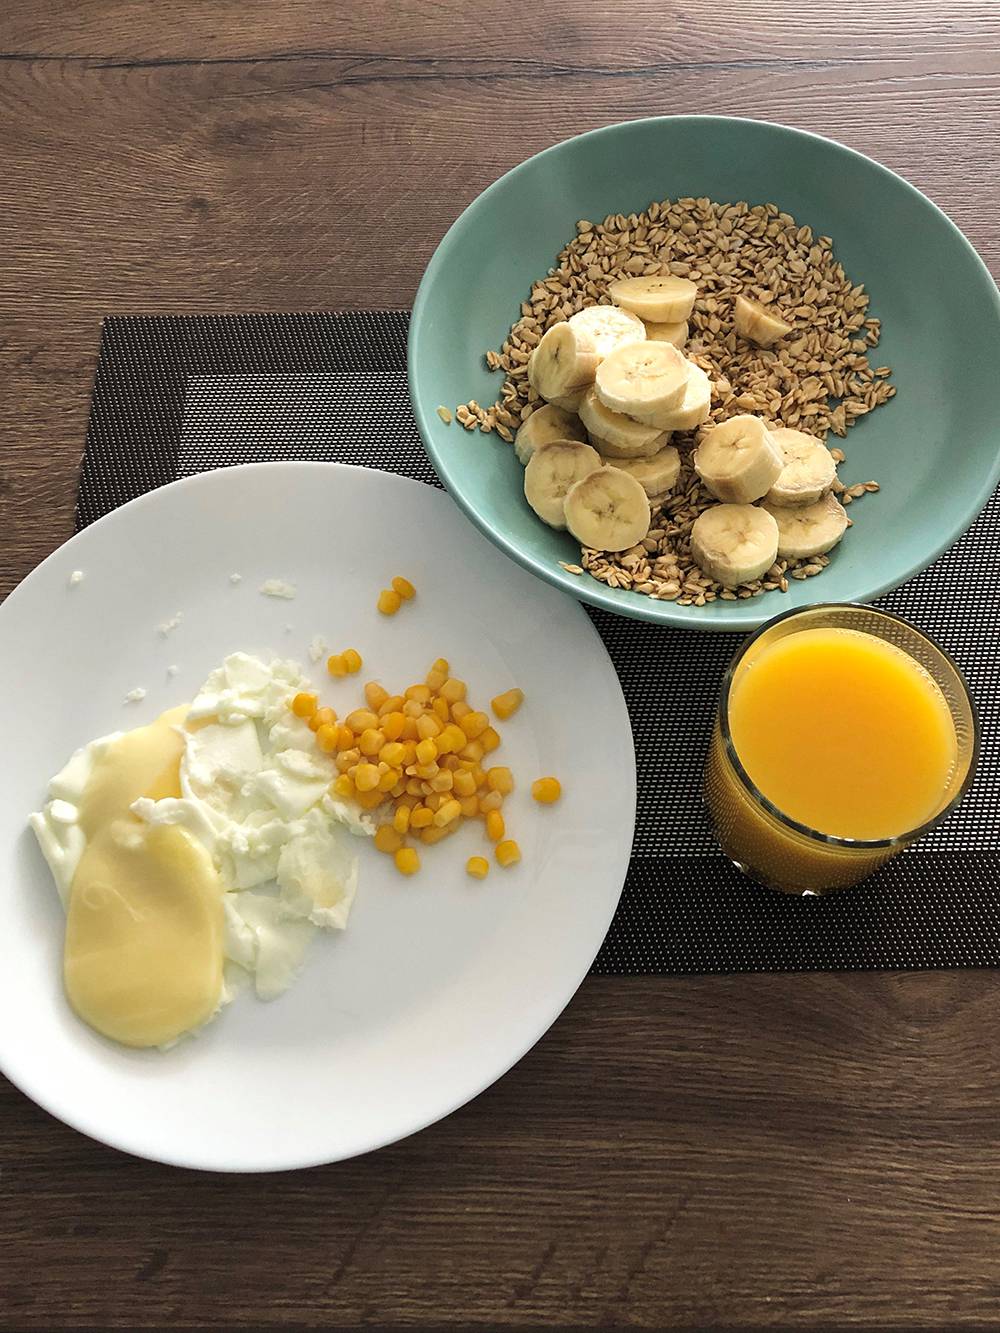 Завтрак: овсянка с бананом, яичный белок, кукуруза